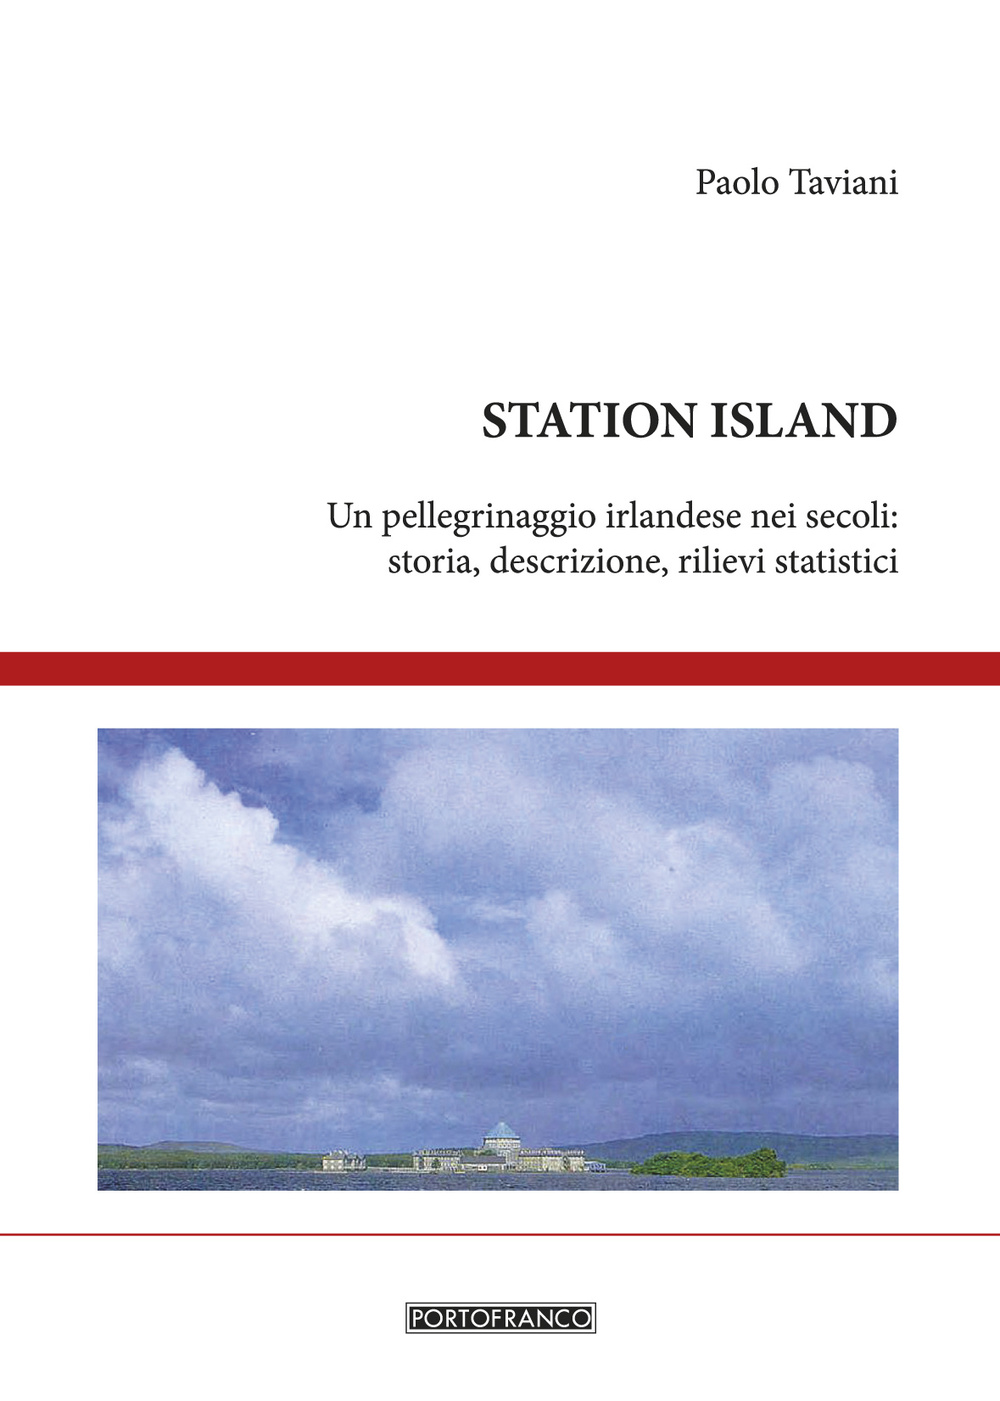 Station Island. Un pellegrinaggio irlandese nei secoli. Storia, descrizione, rilievi statistici